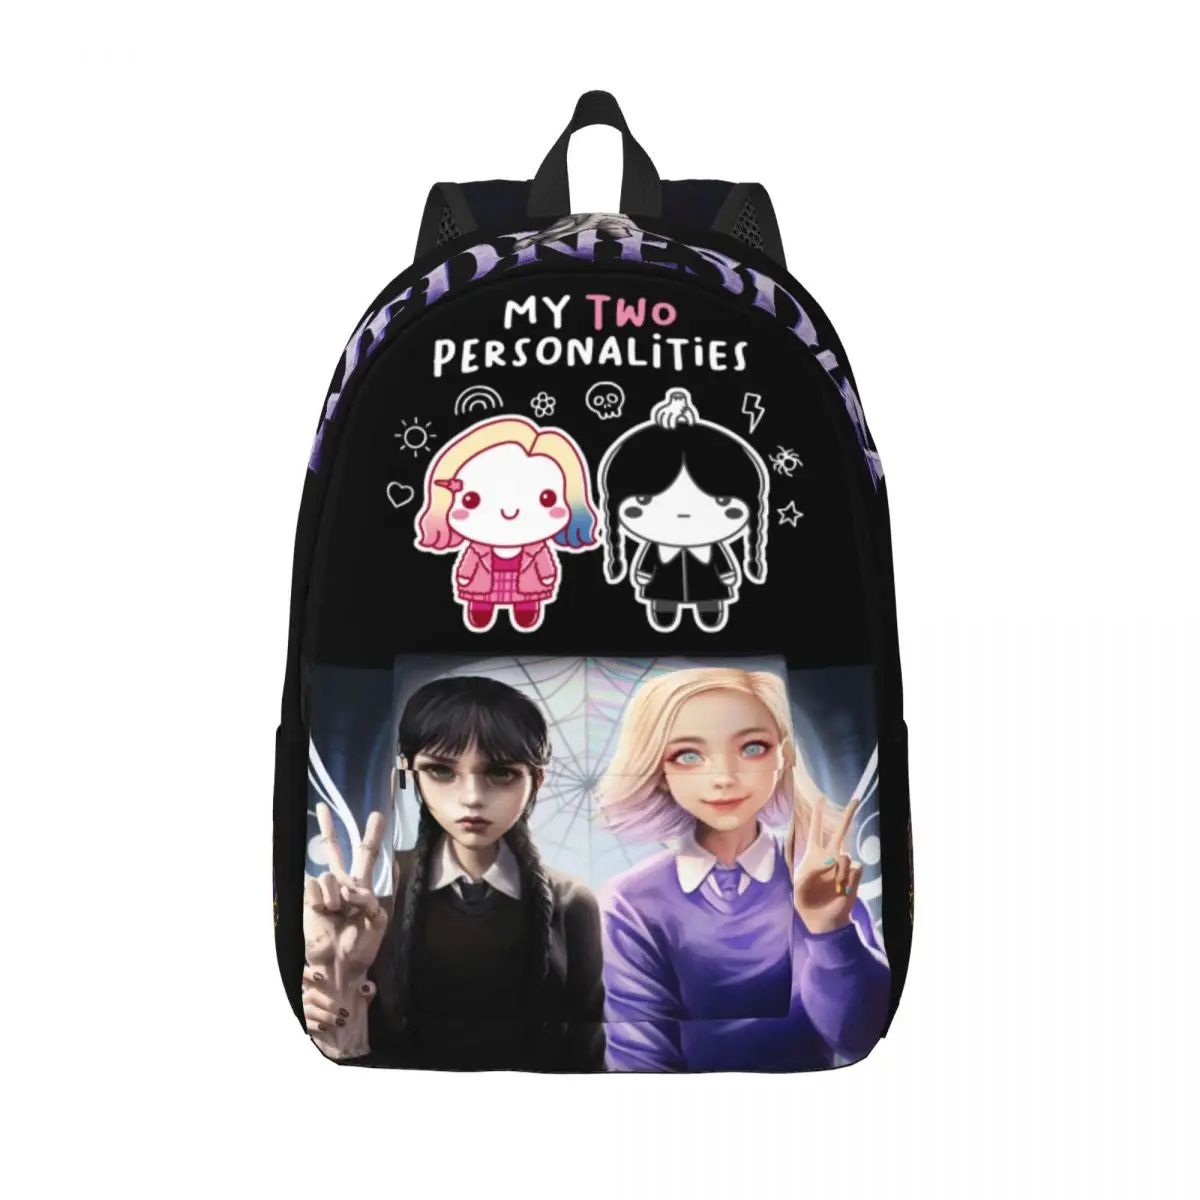 

Wednesday Addams & Enid Sinclair Backpack Cute Sisterhood Student's Schoolbag Bookbag Teenage Bagpack Travel Bag